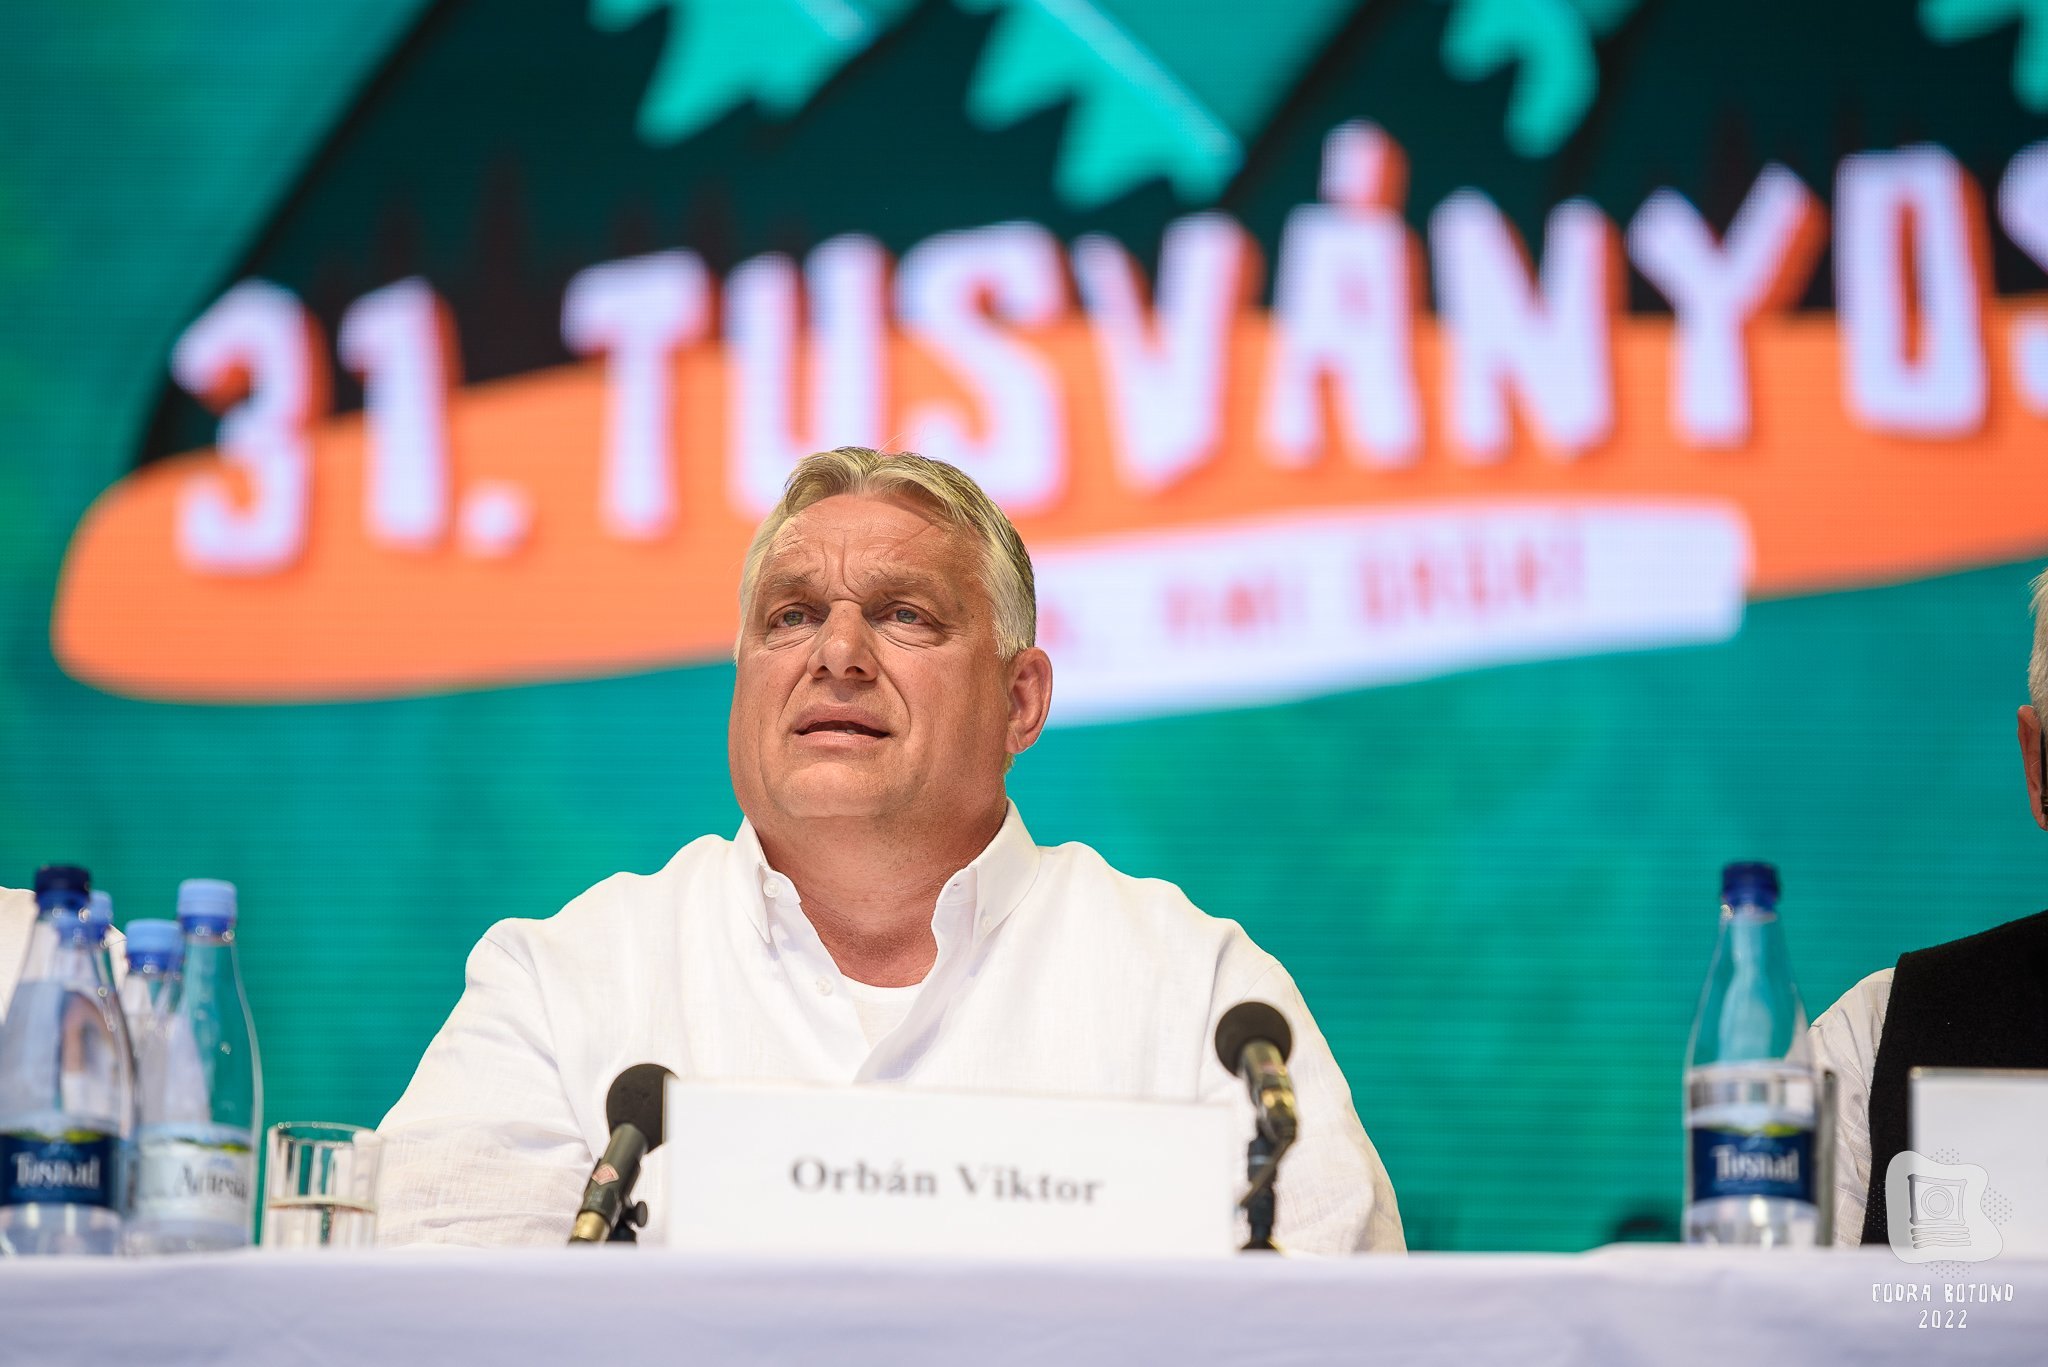 A miniszterelnök szerint Kelemen Hunor kielégítő magyarázatot adott Orbán Viktor tusványosi beszédével kapcsolatban